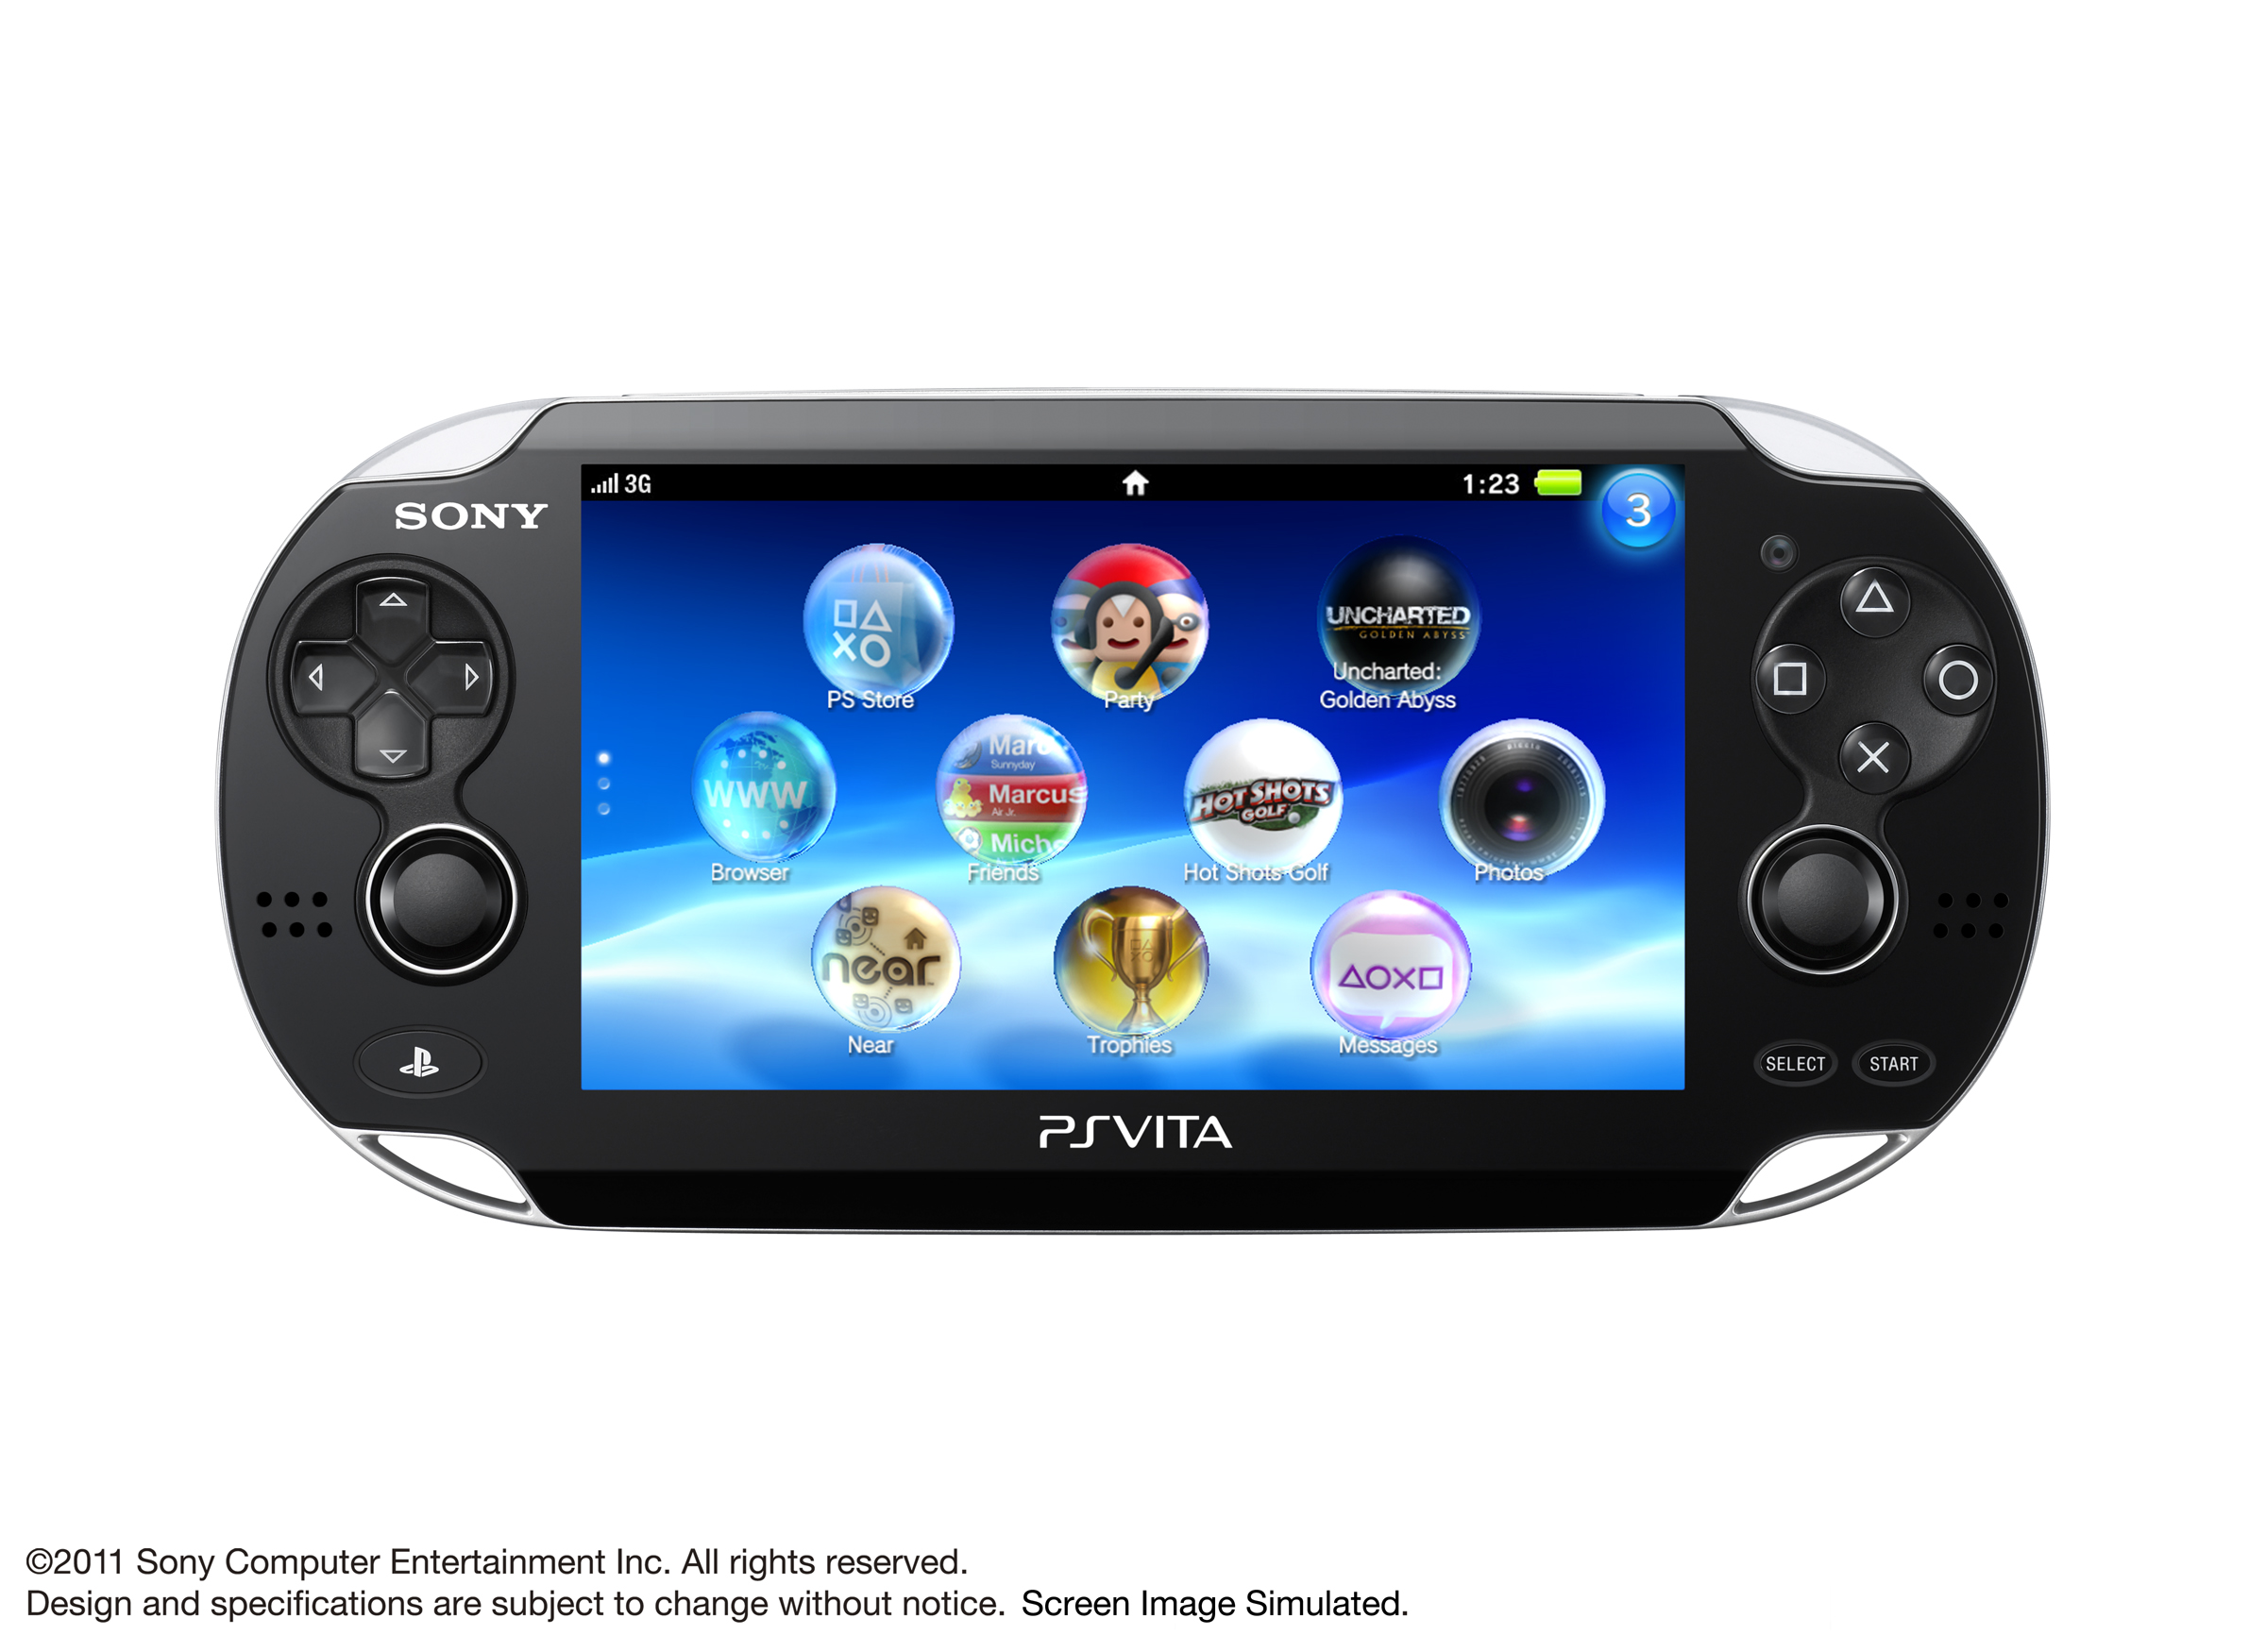 Immagine pubblicata in relazione al seguente contenuto: Sony presenta la nuova console PSP denominata PlayStation Vita | Nome immagine: news15220_1.jpg